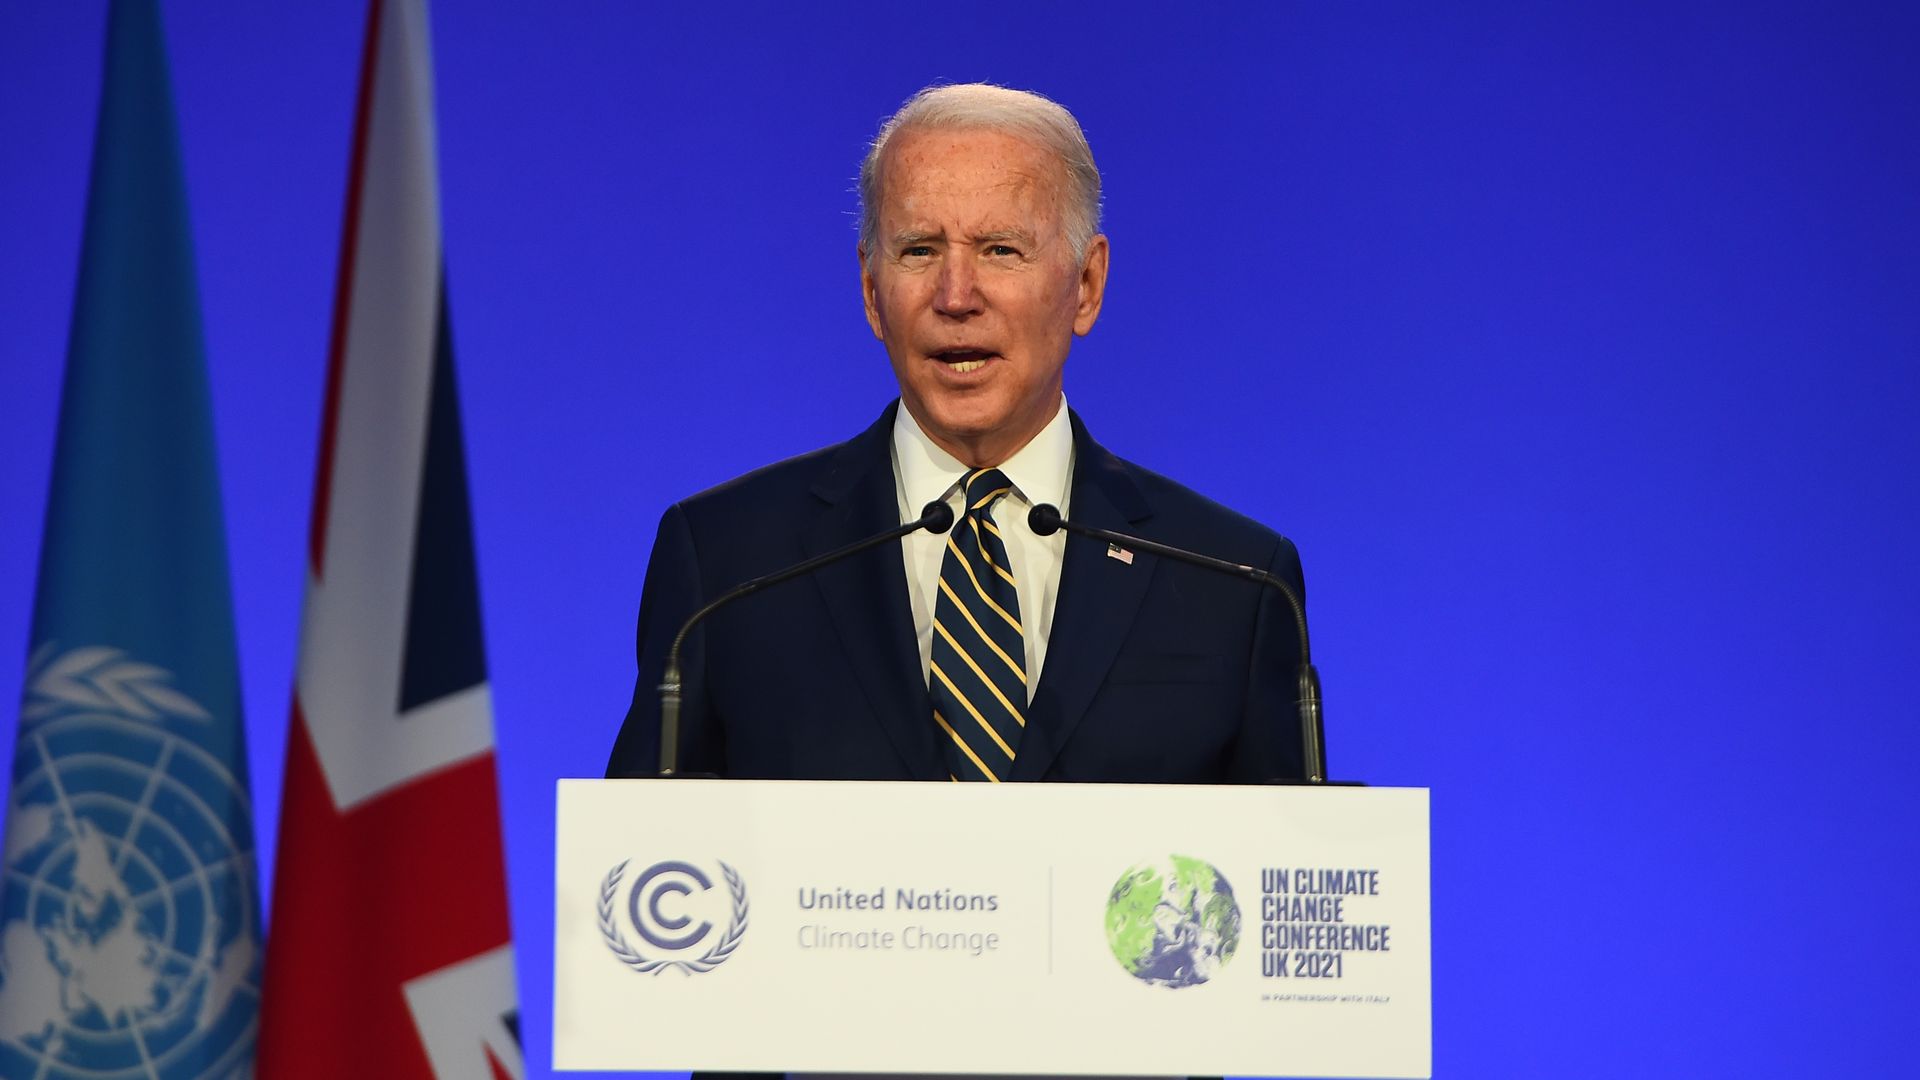 Joe Biden speaks at COP26